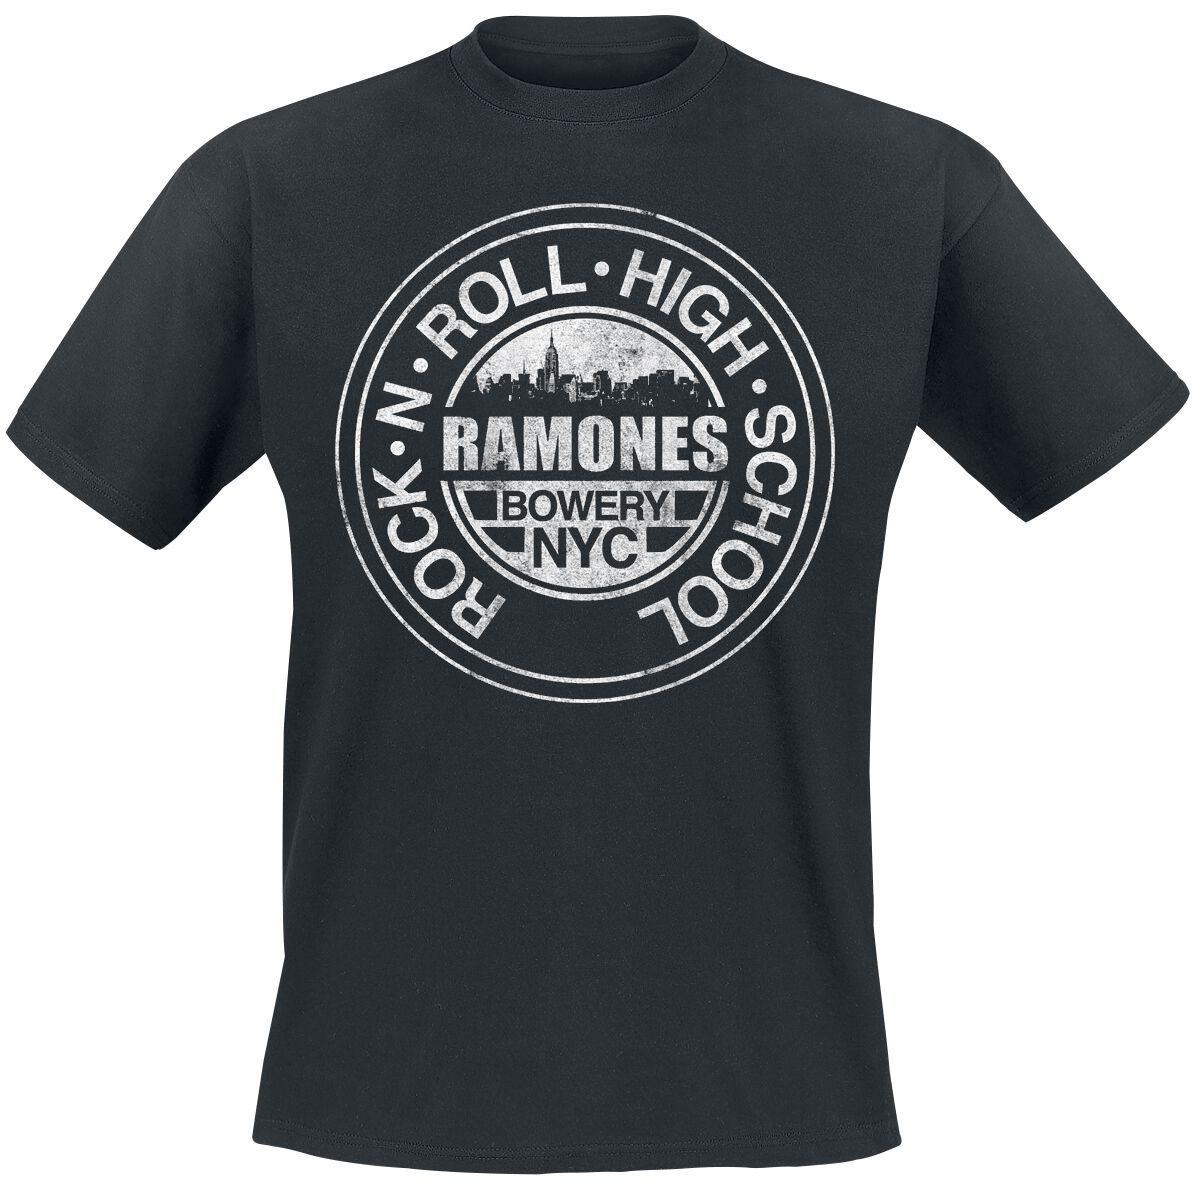 Ramones T-Shirt - Bowery NYC - L bis 5XL - für Männer - Größe L - schwarz  - Lizenziertes Merchandise!